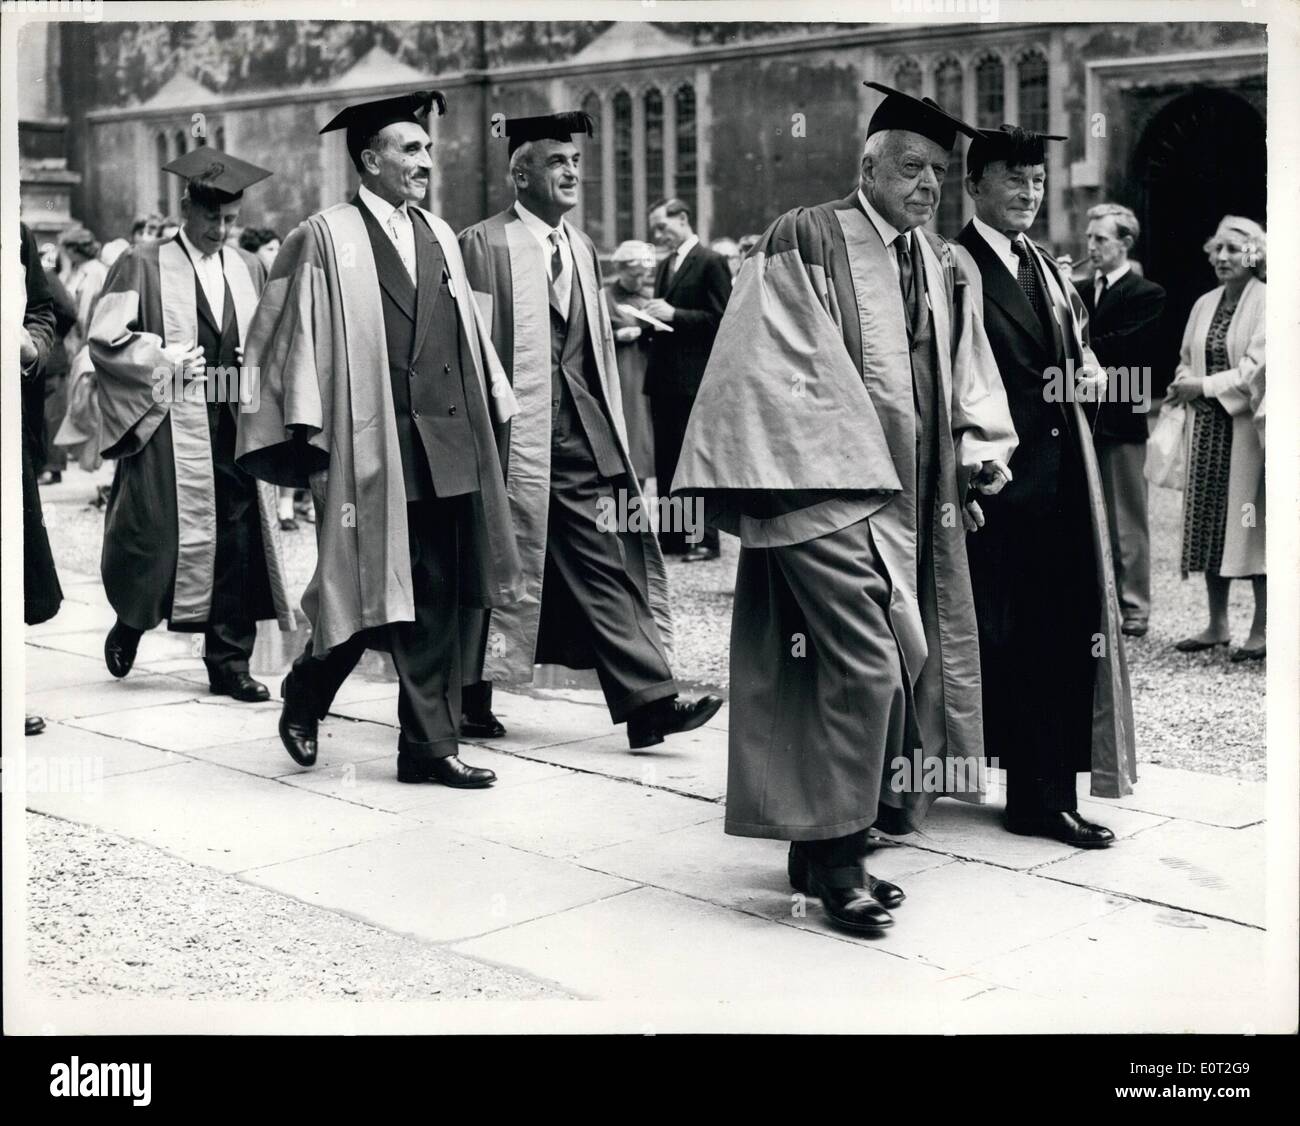 Jul 21, 1960 - 21-7-60 grado día por científicos de la Universidad de Oxford. Para conmemorar a los tricentenarios de la Royal Society, de la Universidad de Oxford hoy otorgado el doctorado Honoris Causa de la ciencia en algunos de los participantes en la celebración. Muestra fotográfica: Caminar en procesión en la Universidad de Oxford son los cinco científicos que recibieron títulos honoríficos de hoy. Ellos son: (I) El Dr. Alfred Newton Richards, de la Universidad de Pennsylvania, EE.UU. (el más cercano a la cámara), el profesor Nikolai Nikolaevich Semenov, miembro del Presidium de la Academia de Ciencias de la U.S.S.R Foto de stock